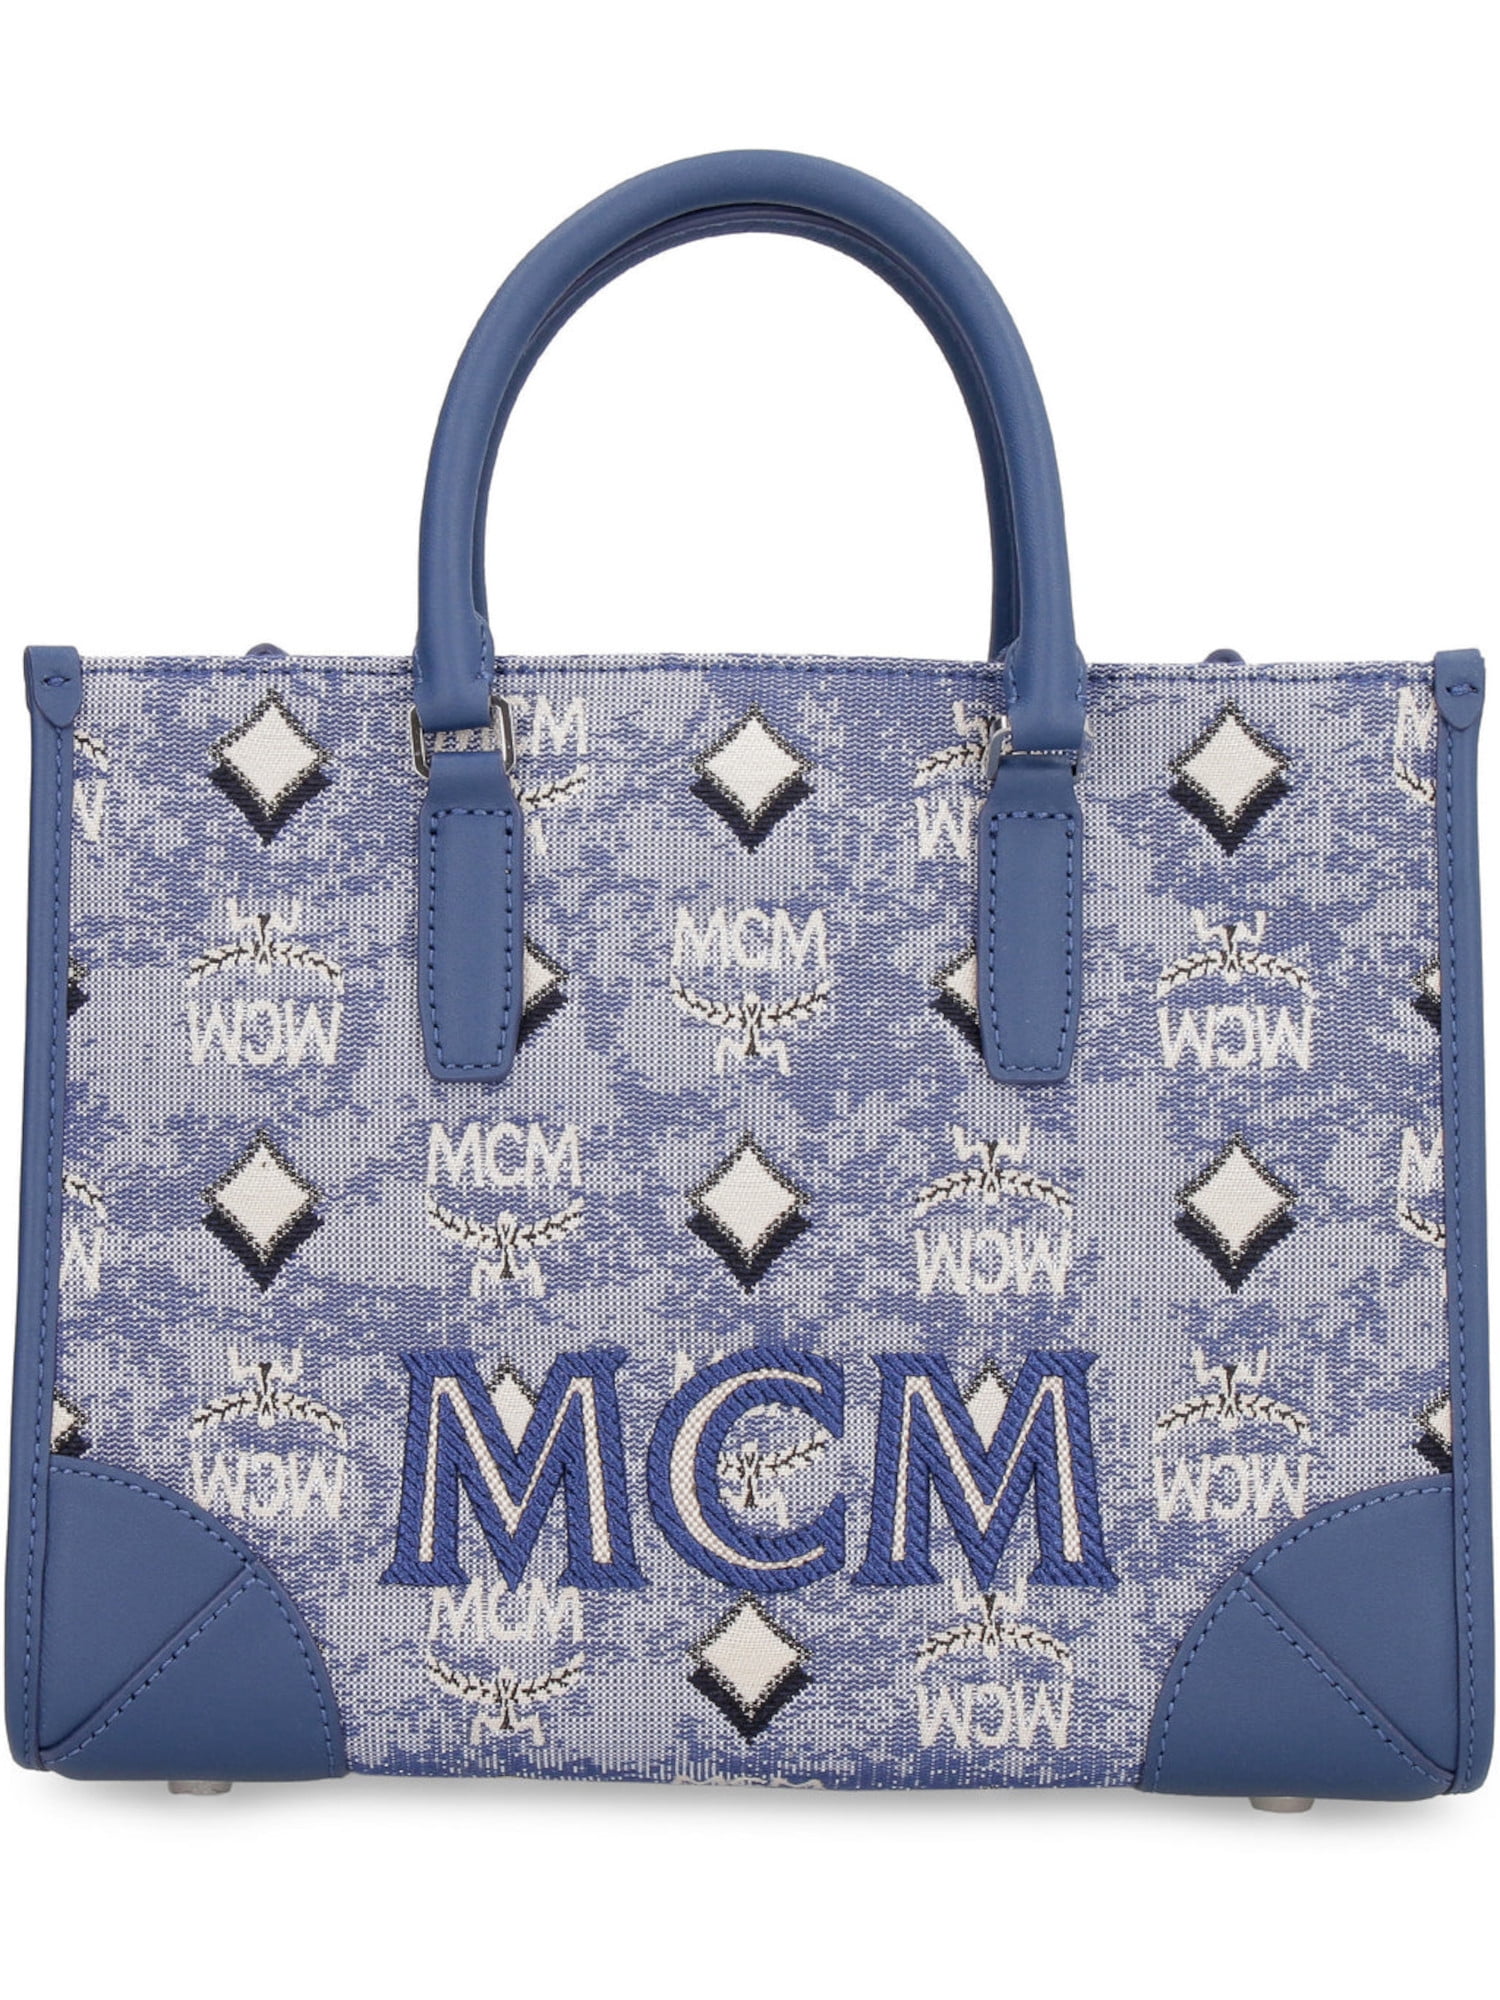 MCM Handbags, Shoes, Wallets, Sunglasses & more